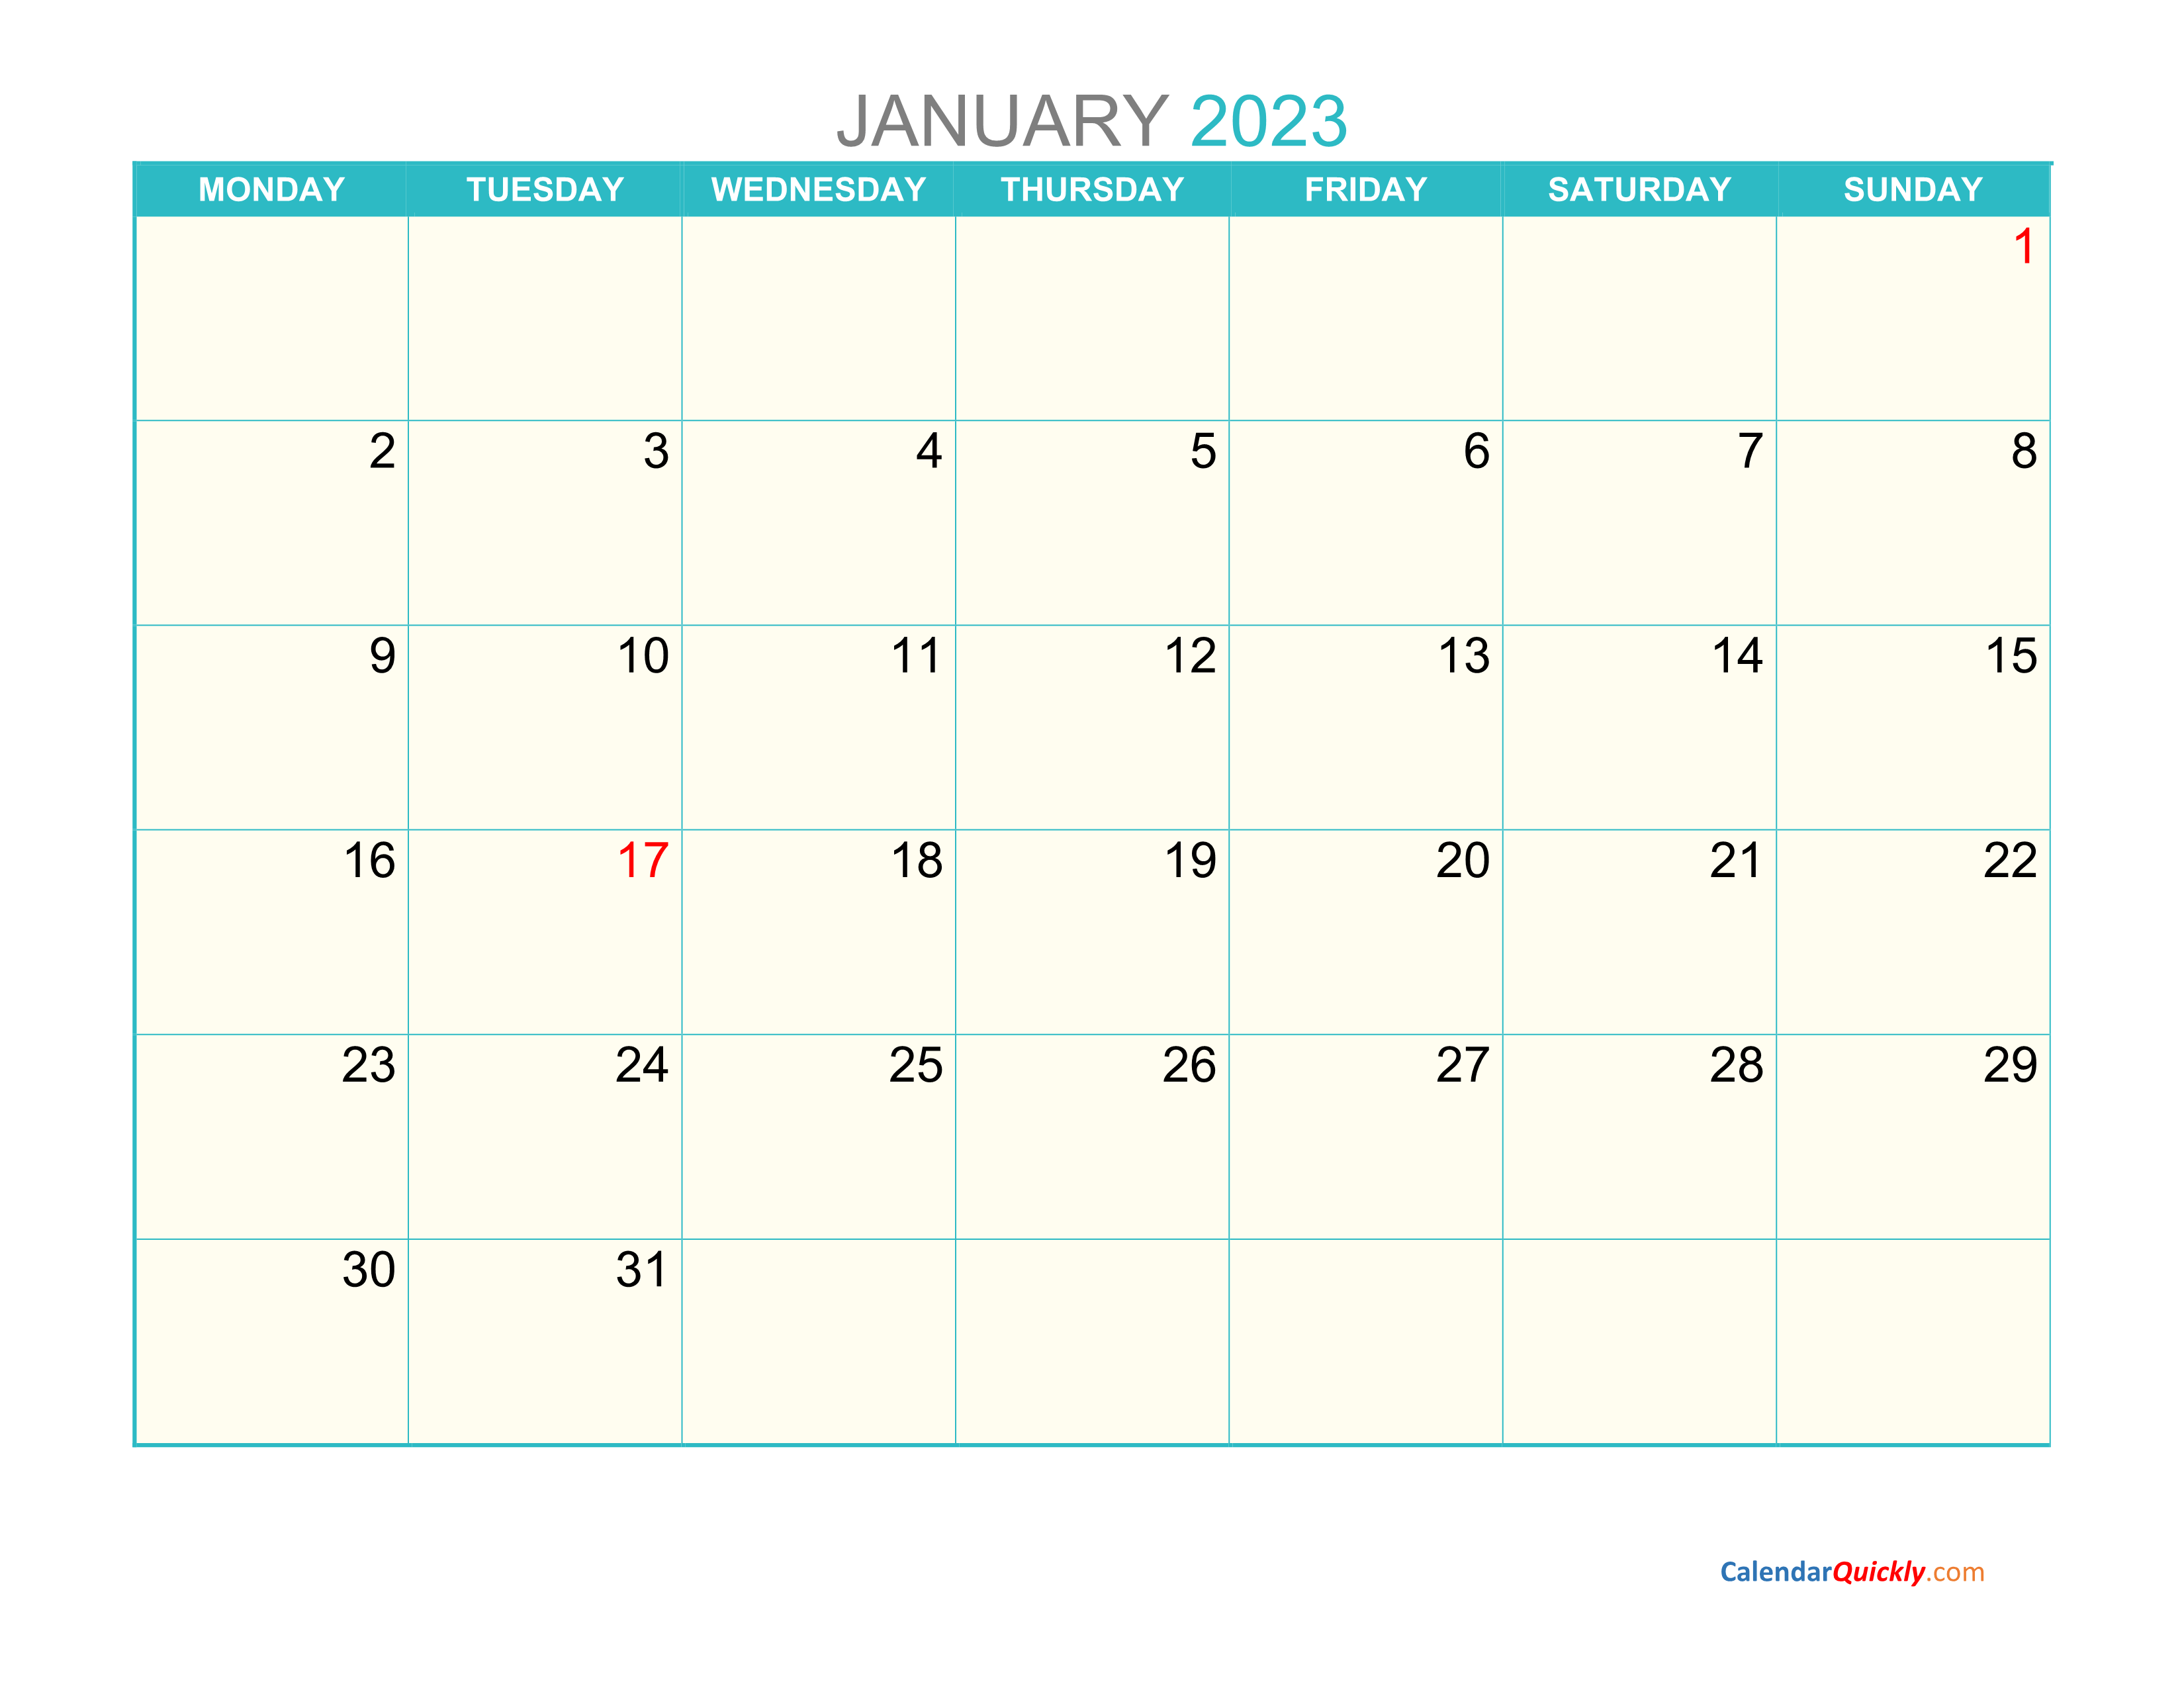 monthly-monday-2023-calendar-printable-calendar-quickly